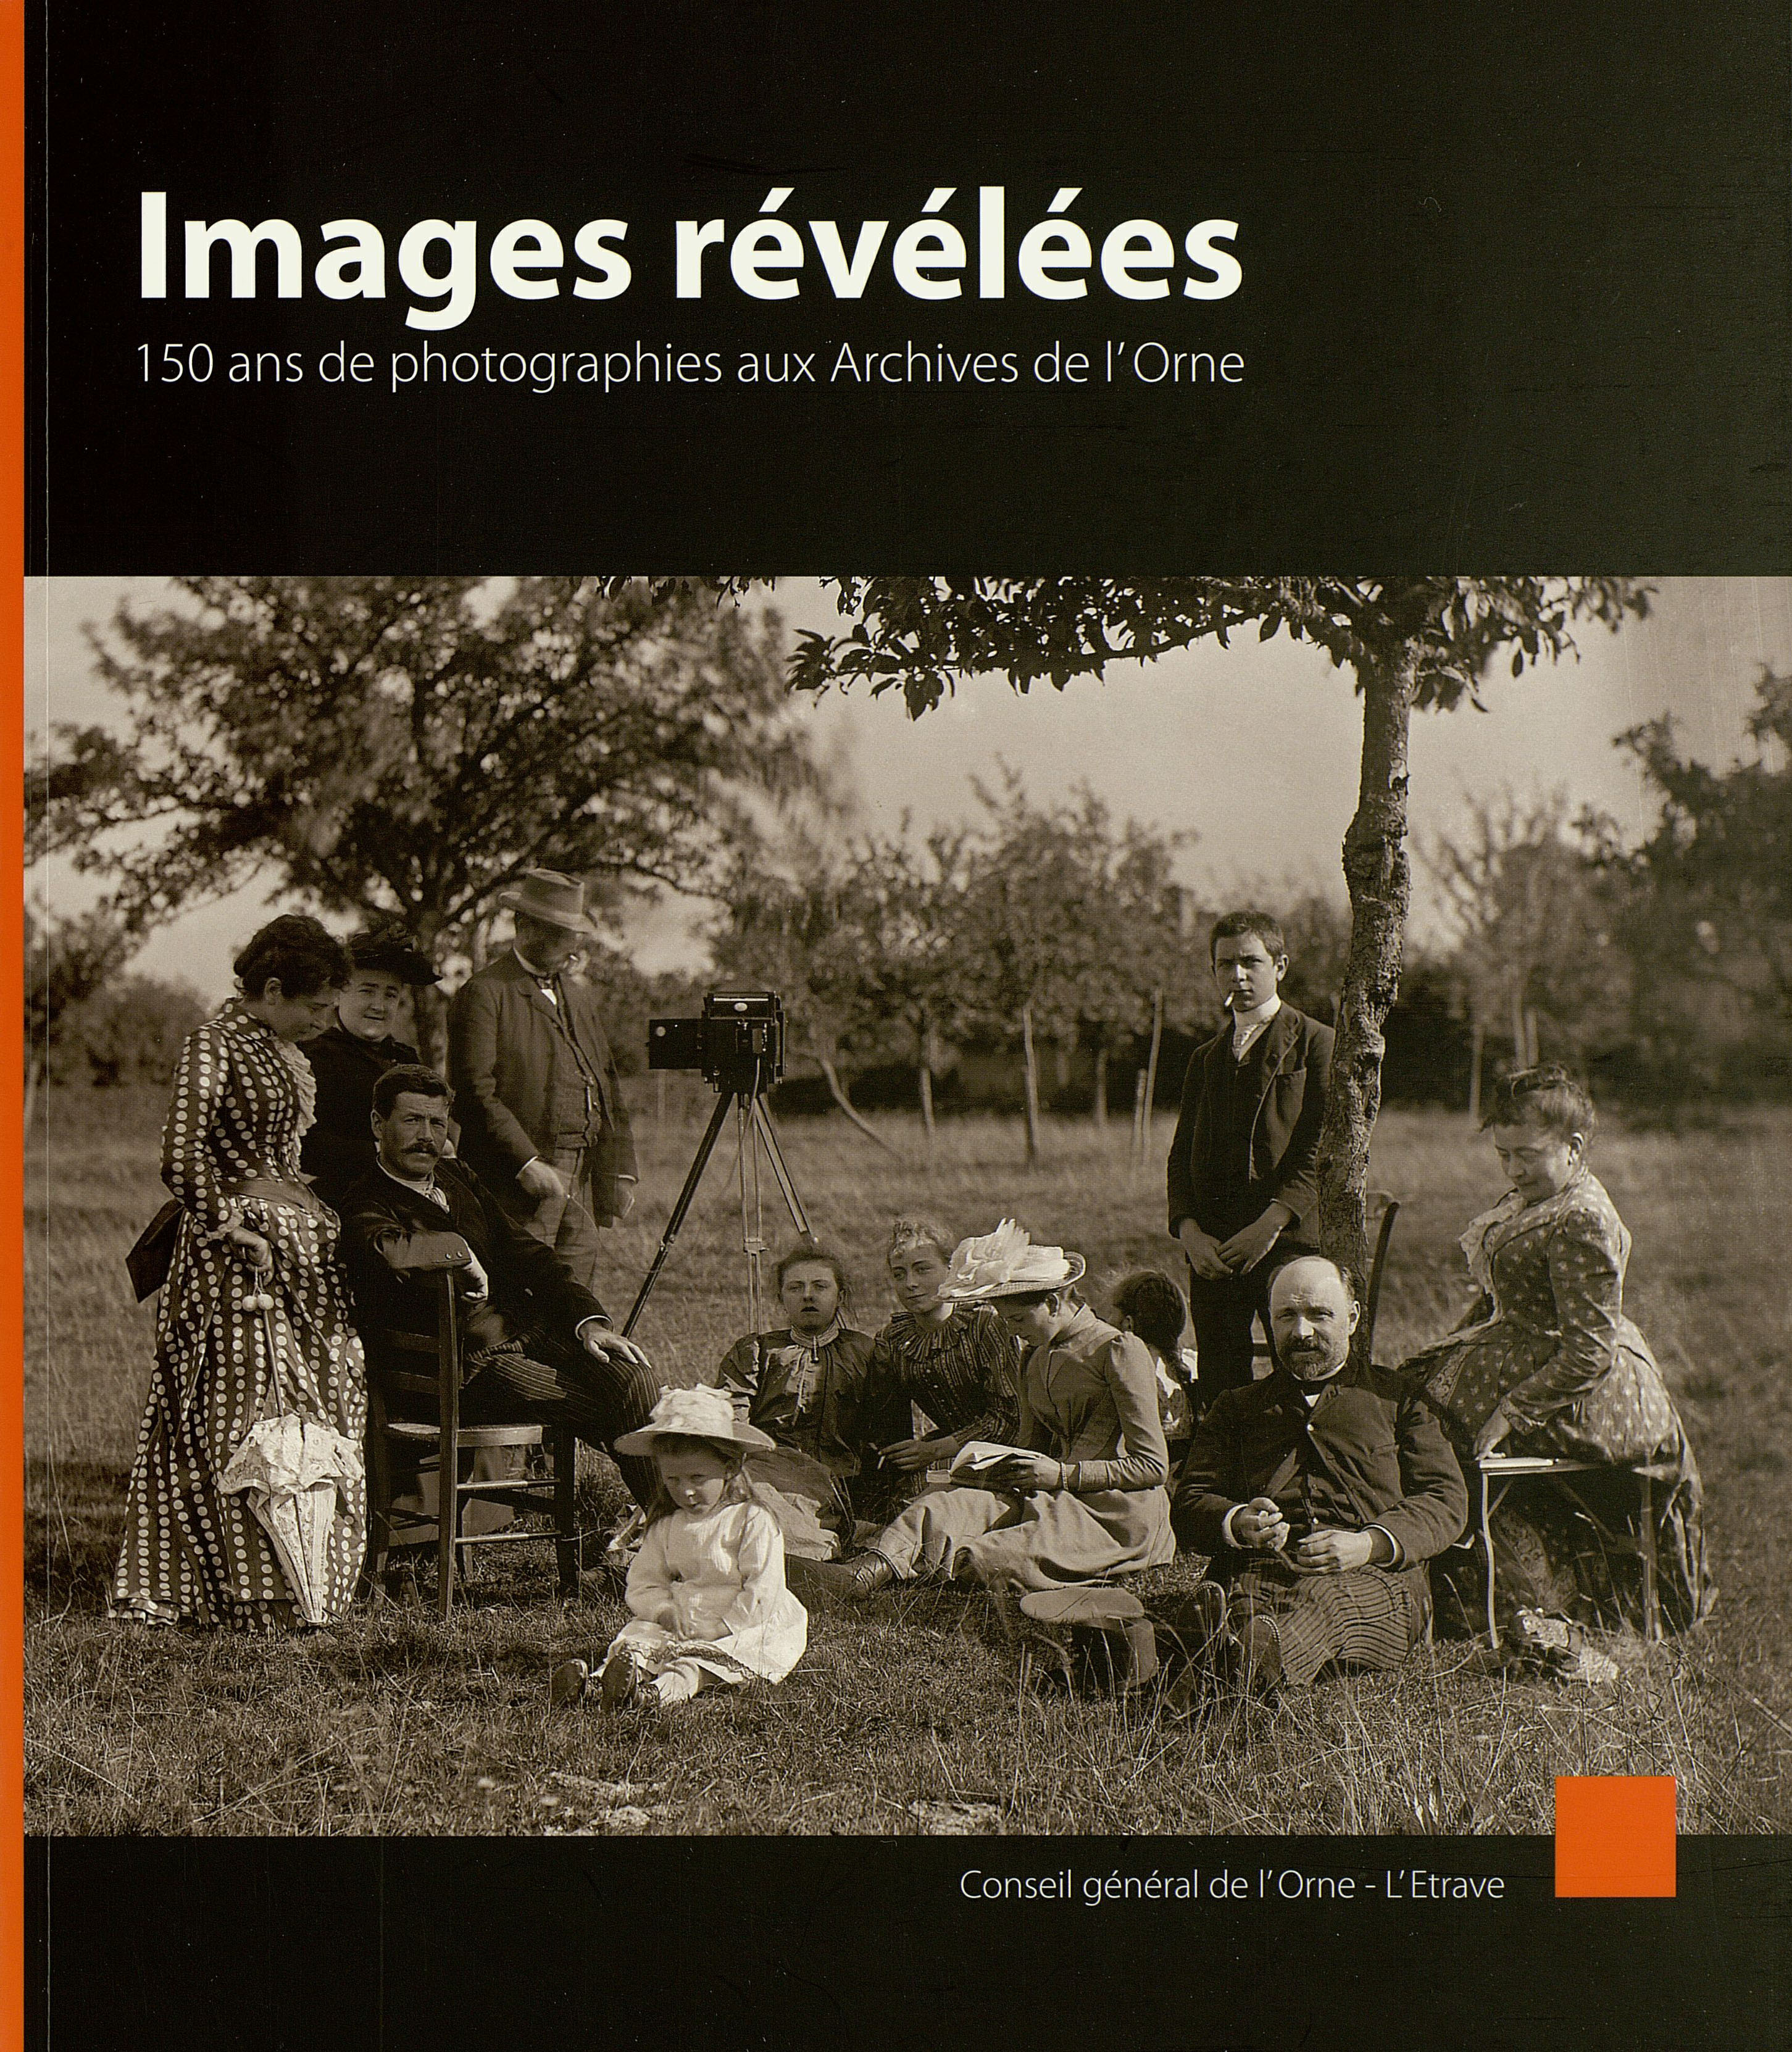 Images révélées. 150 ans de photographies aux Archives de l'Orne